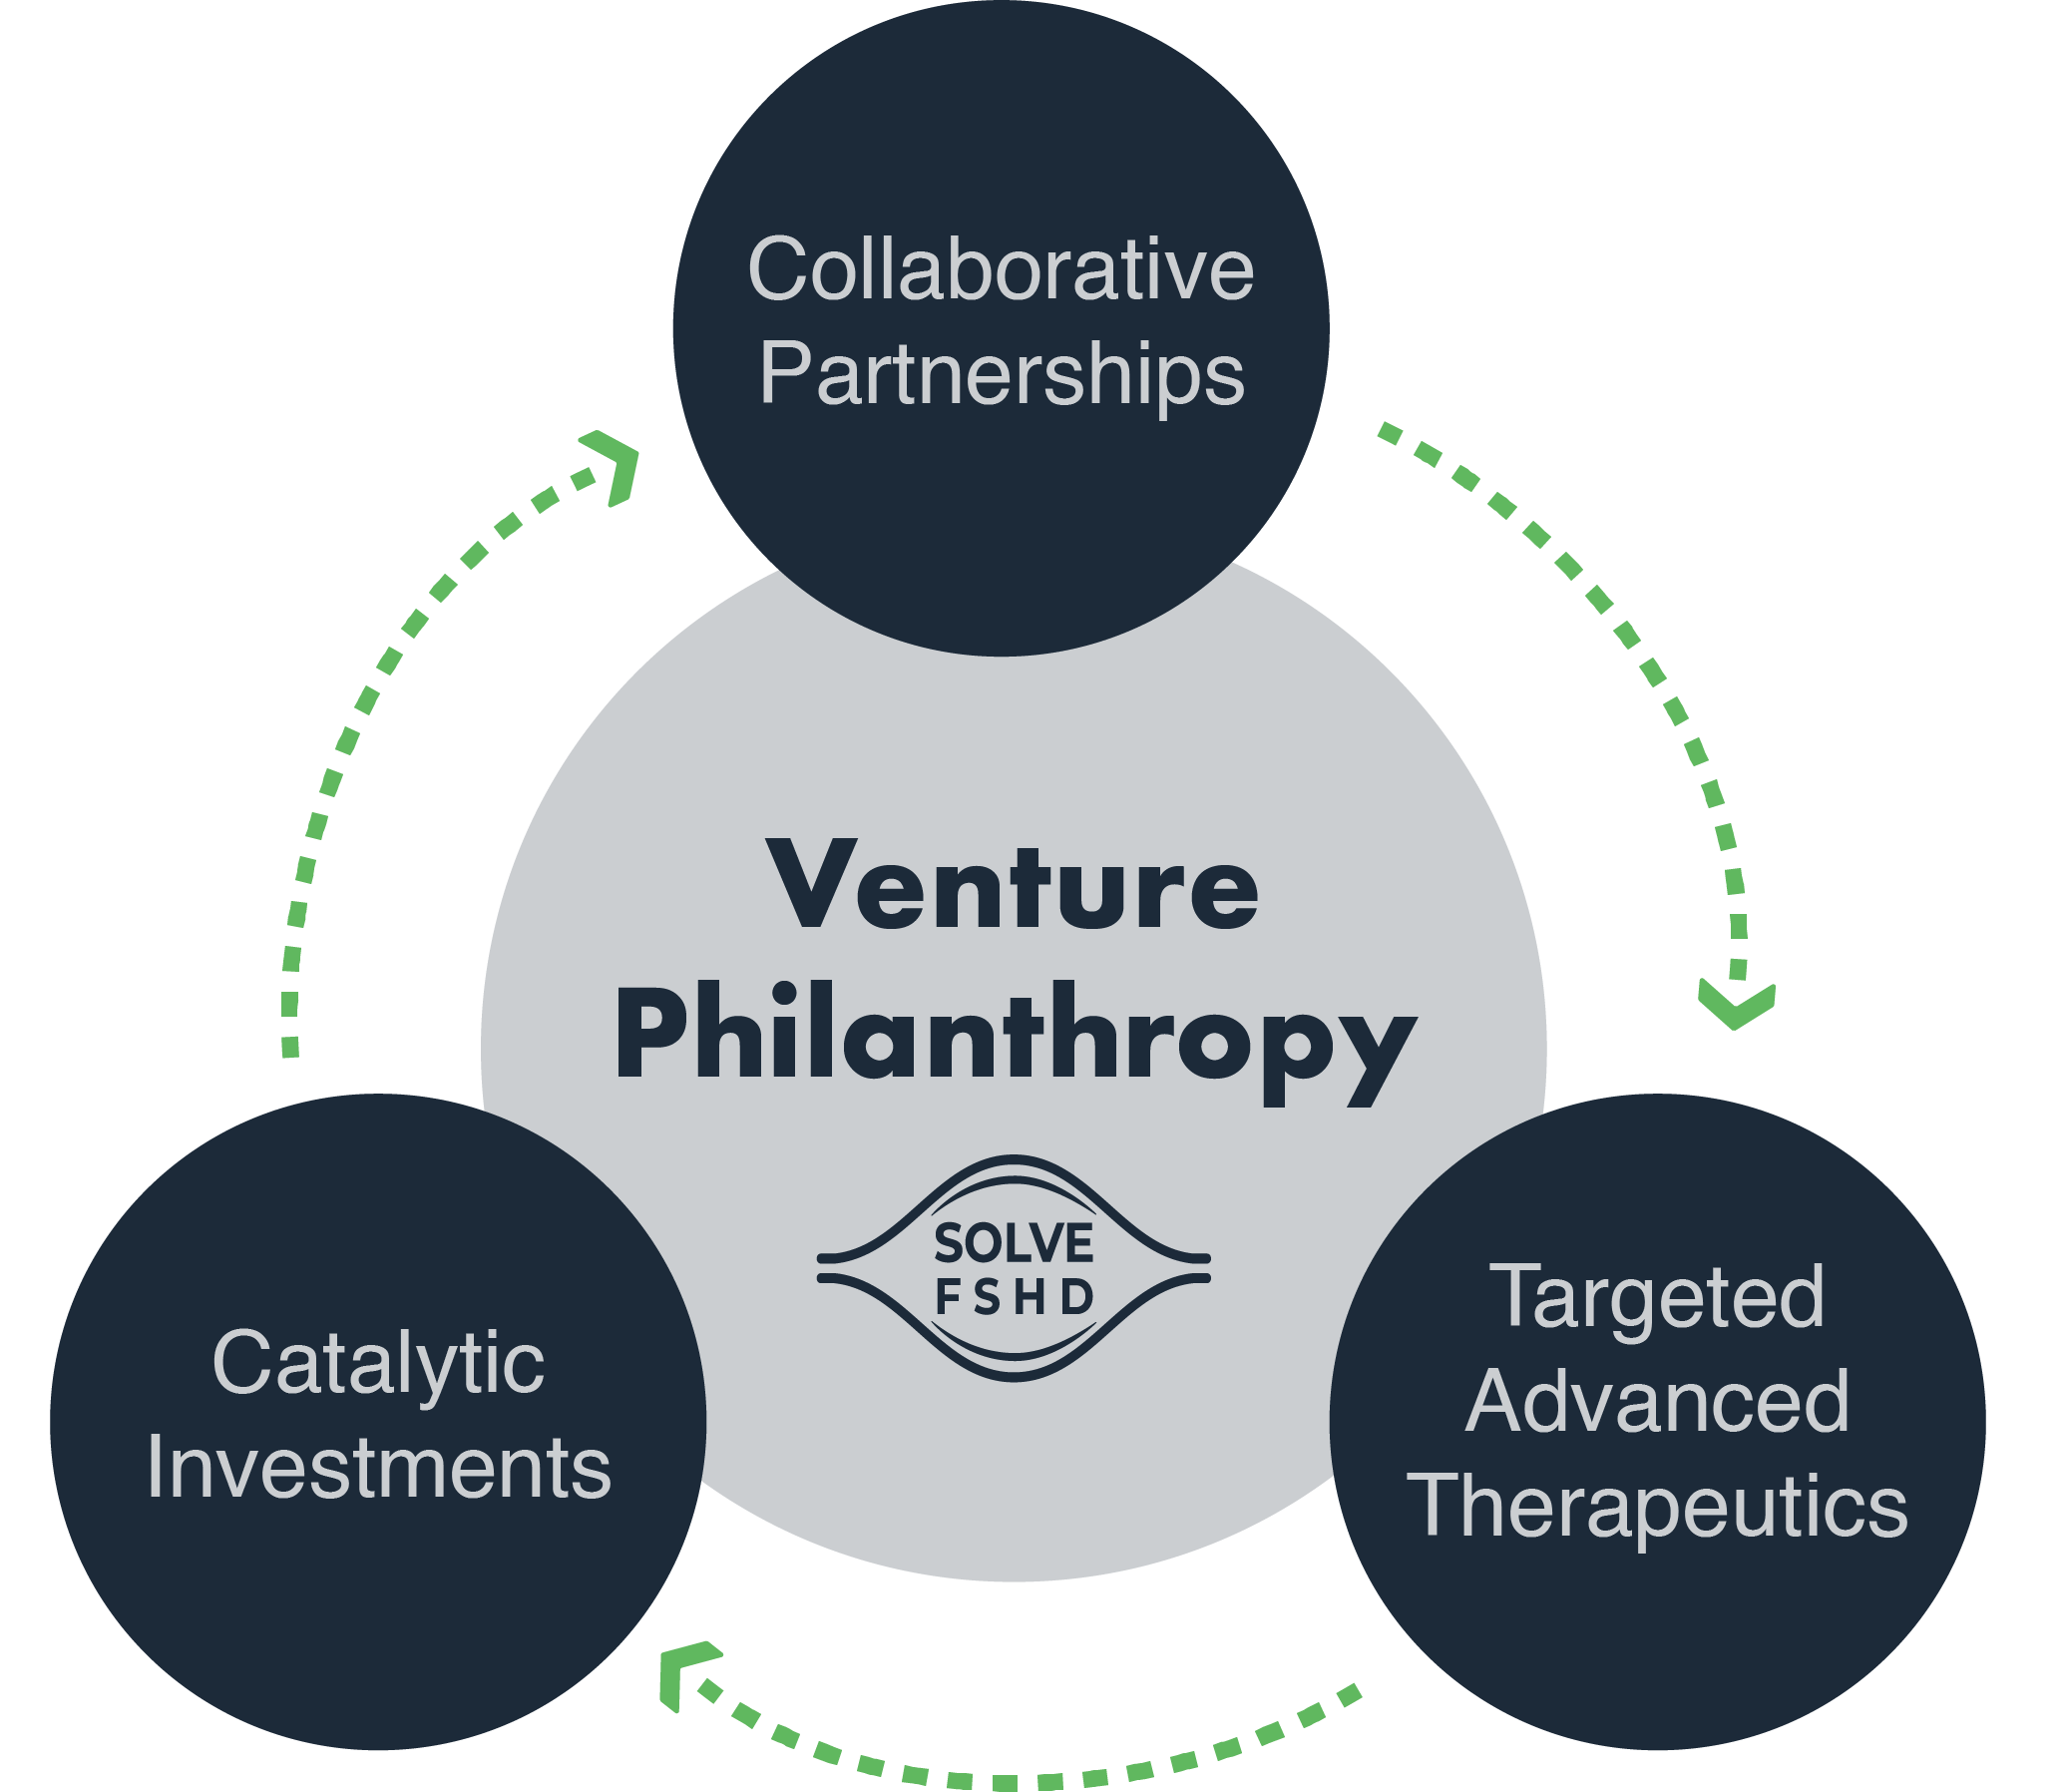 Venture Philanthropy